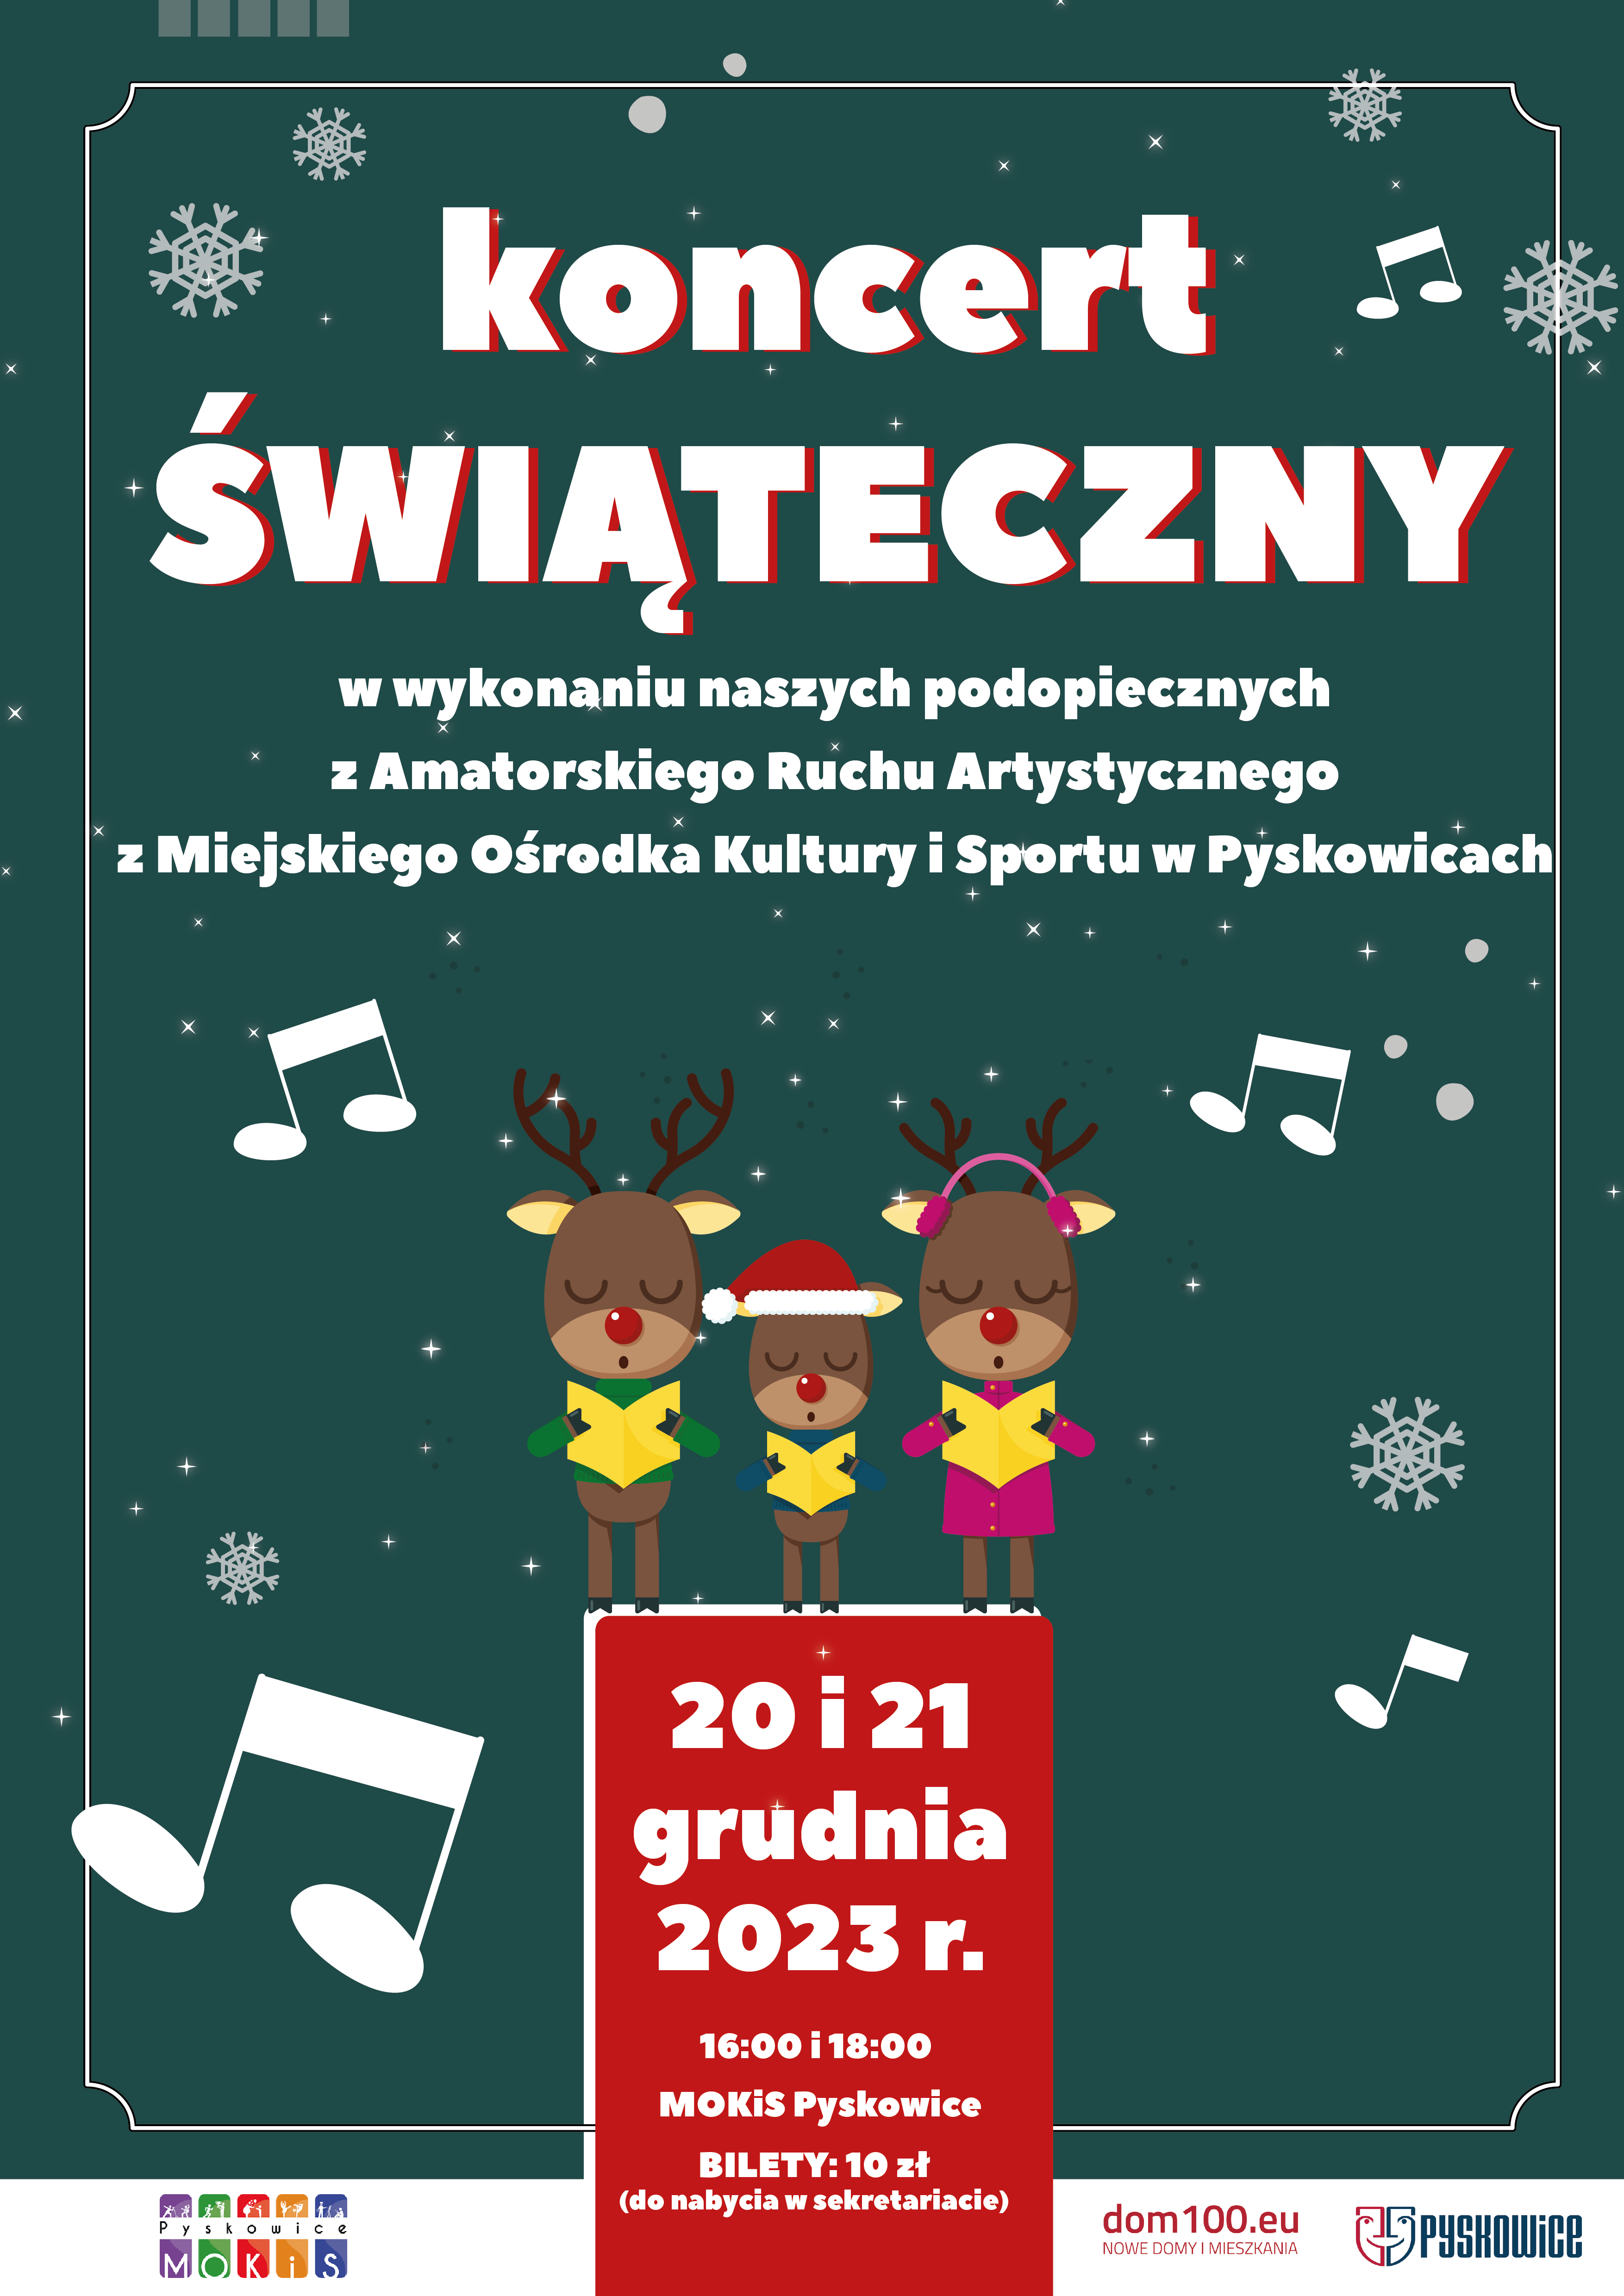 Plakat promujący Koncert Świąteczny w wykonaniu podopiecznych Miejskiego Ośrodka Kultury i Sportu w Pyskowicach